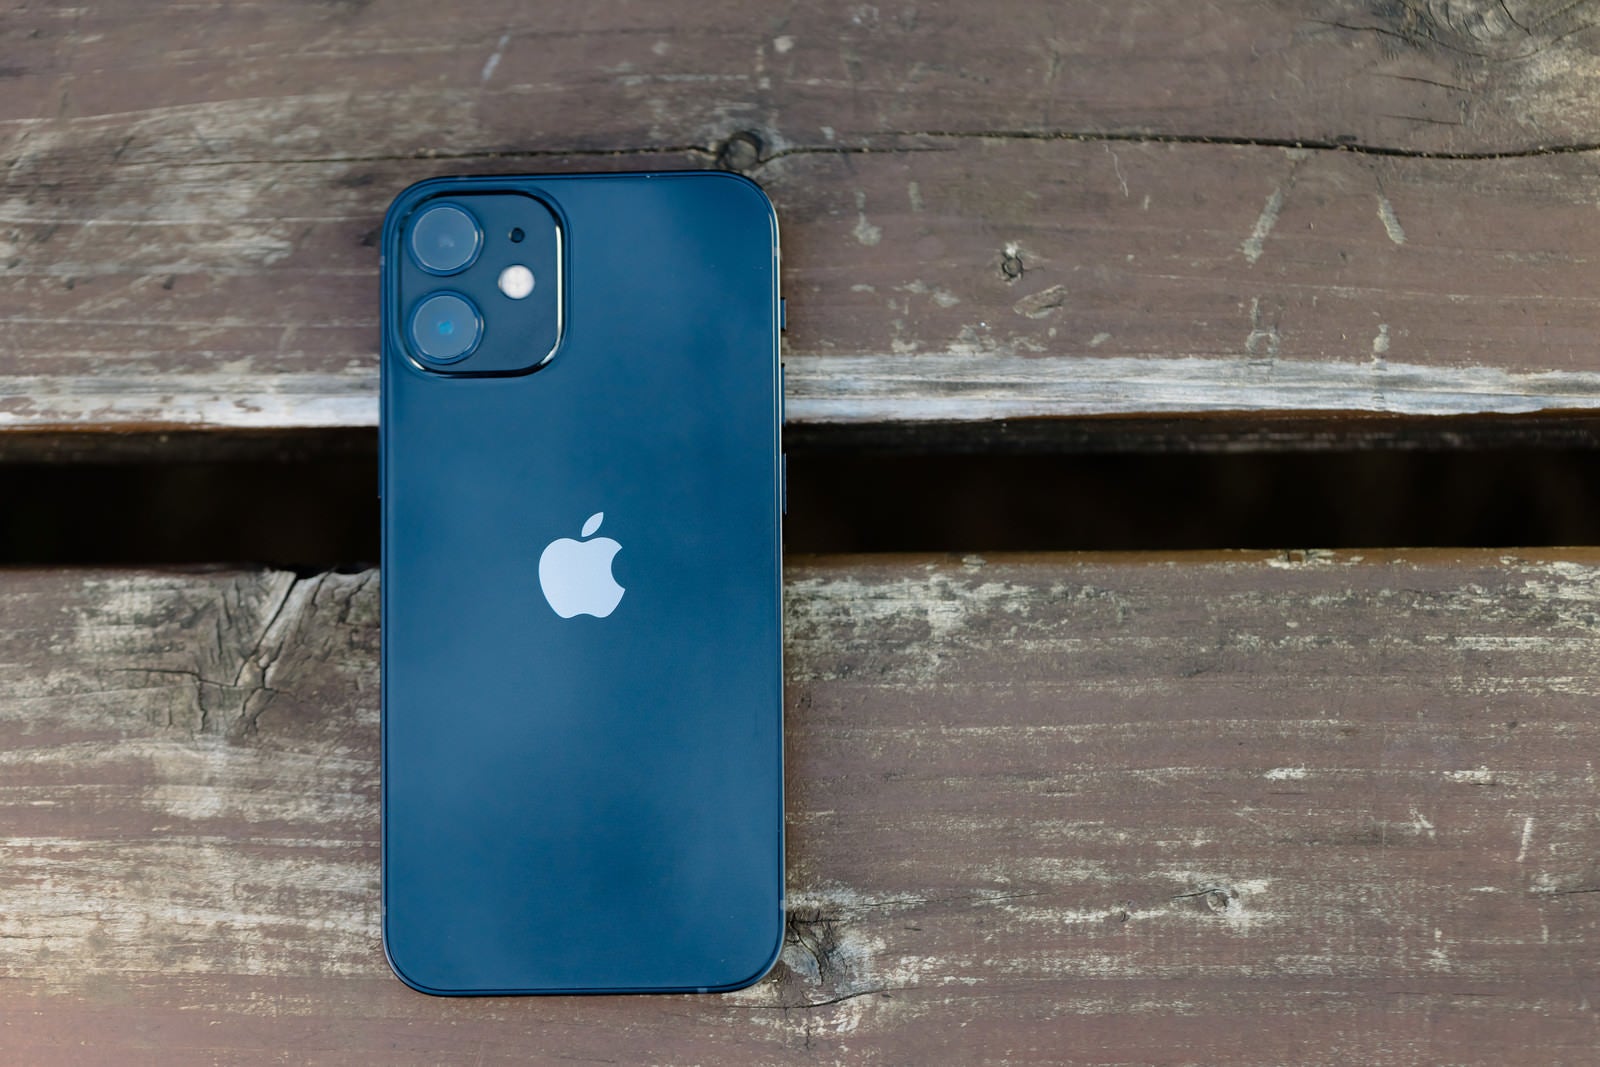 「ベンチに置かれた iPhone 12 mini（ブルー）」の写真